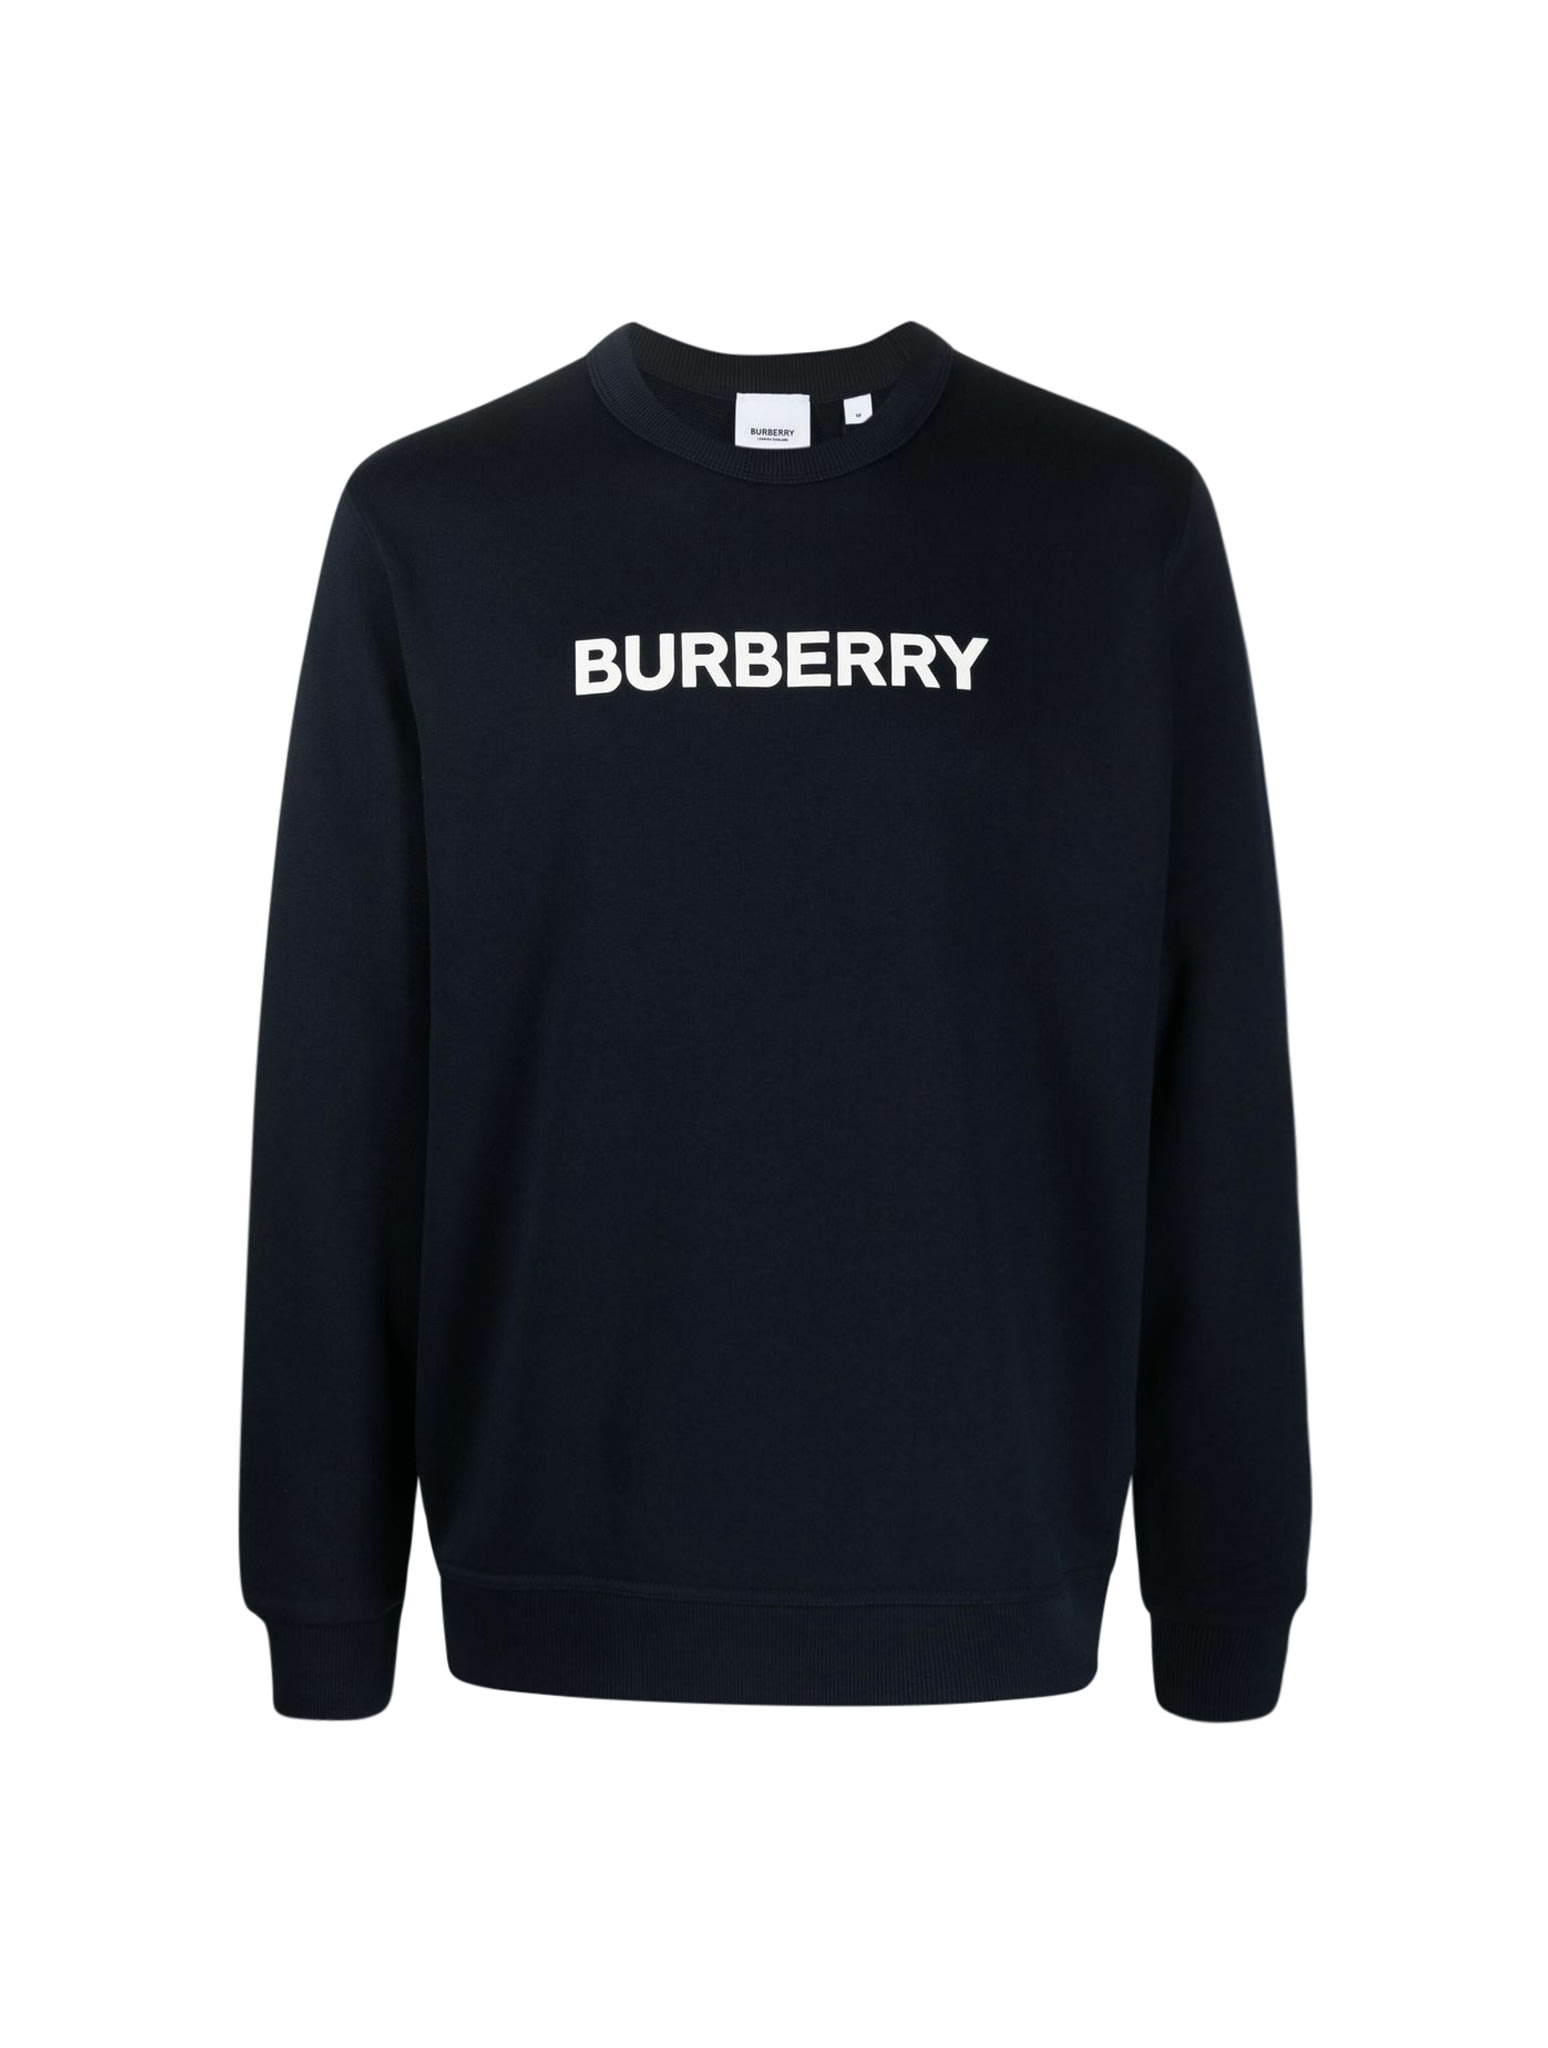 Burberry Burlow